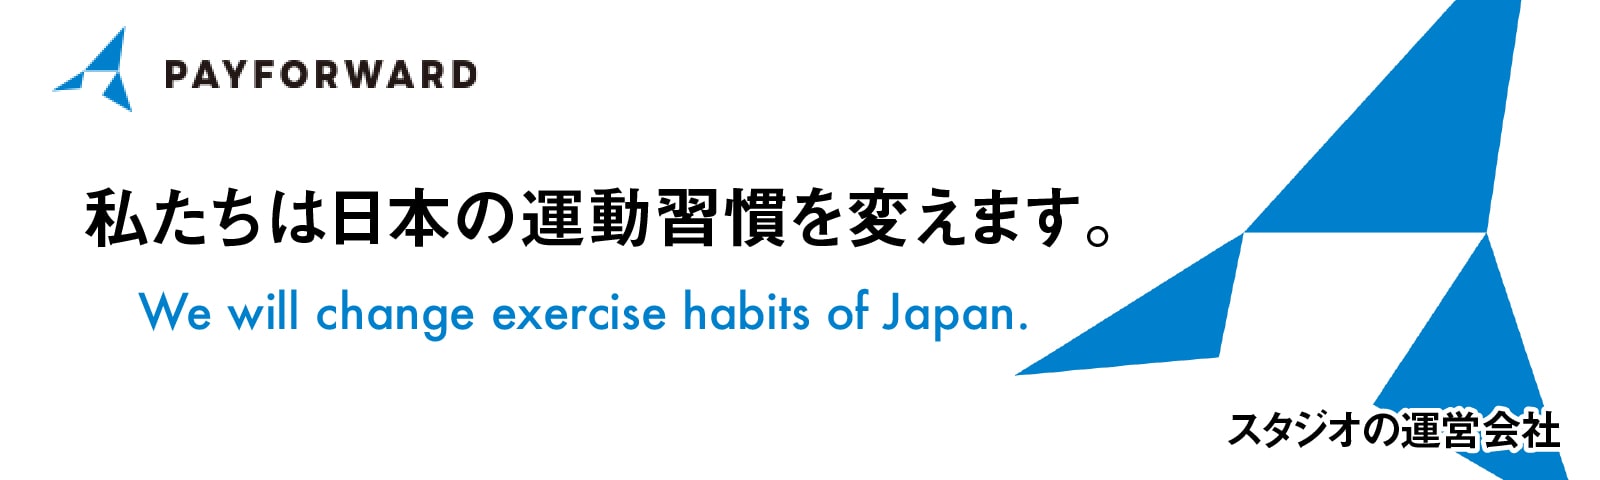 株式会社PAY FORWARD 私たちは日本の運動習慣を変えます。